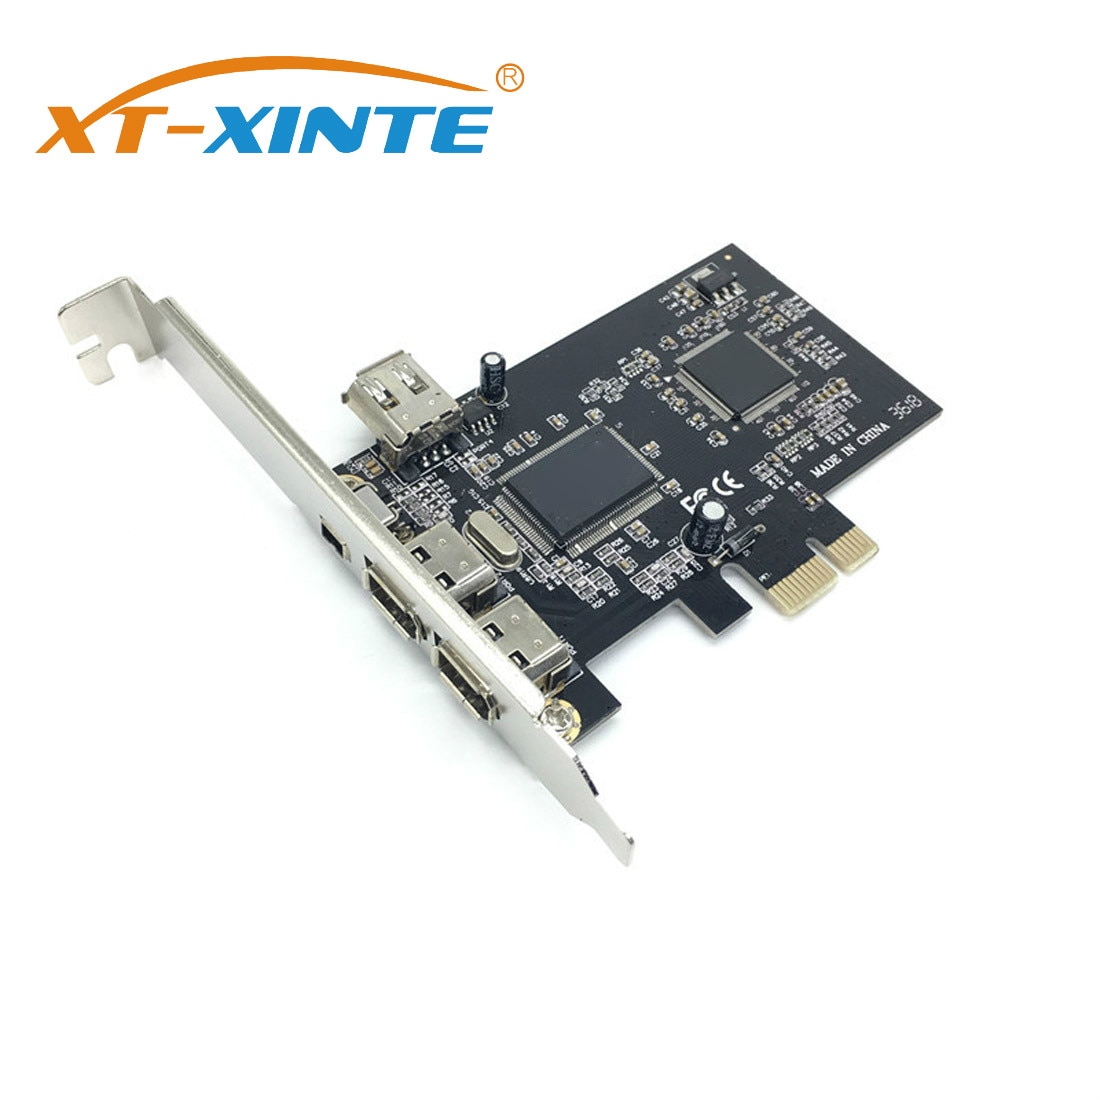 XT-XINTE Pcie 3 Poort 1394A Firewire Uitbreiding Pci Express Naar Ieee 1394 Adapter Controller 2X6 Pin En 1X4 Pin Voor Desktop